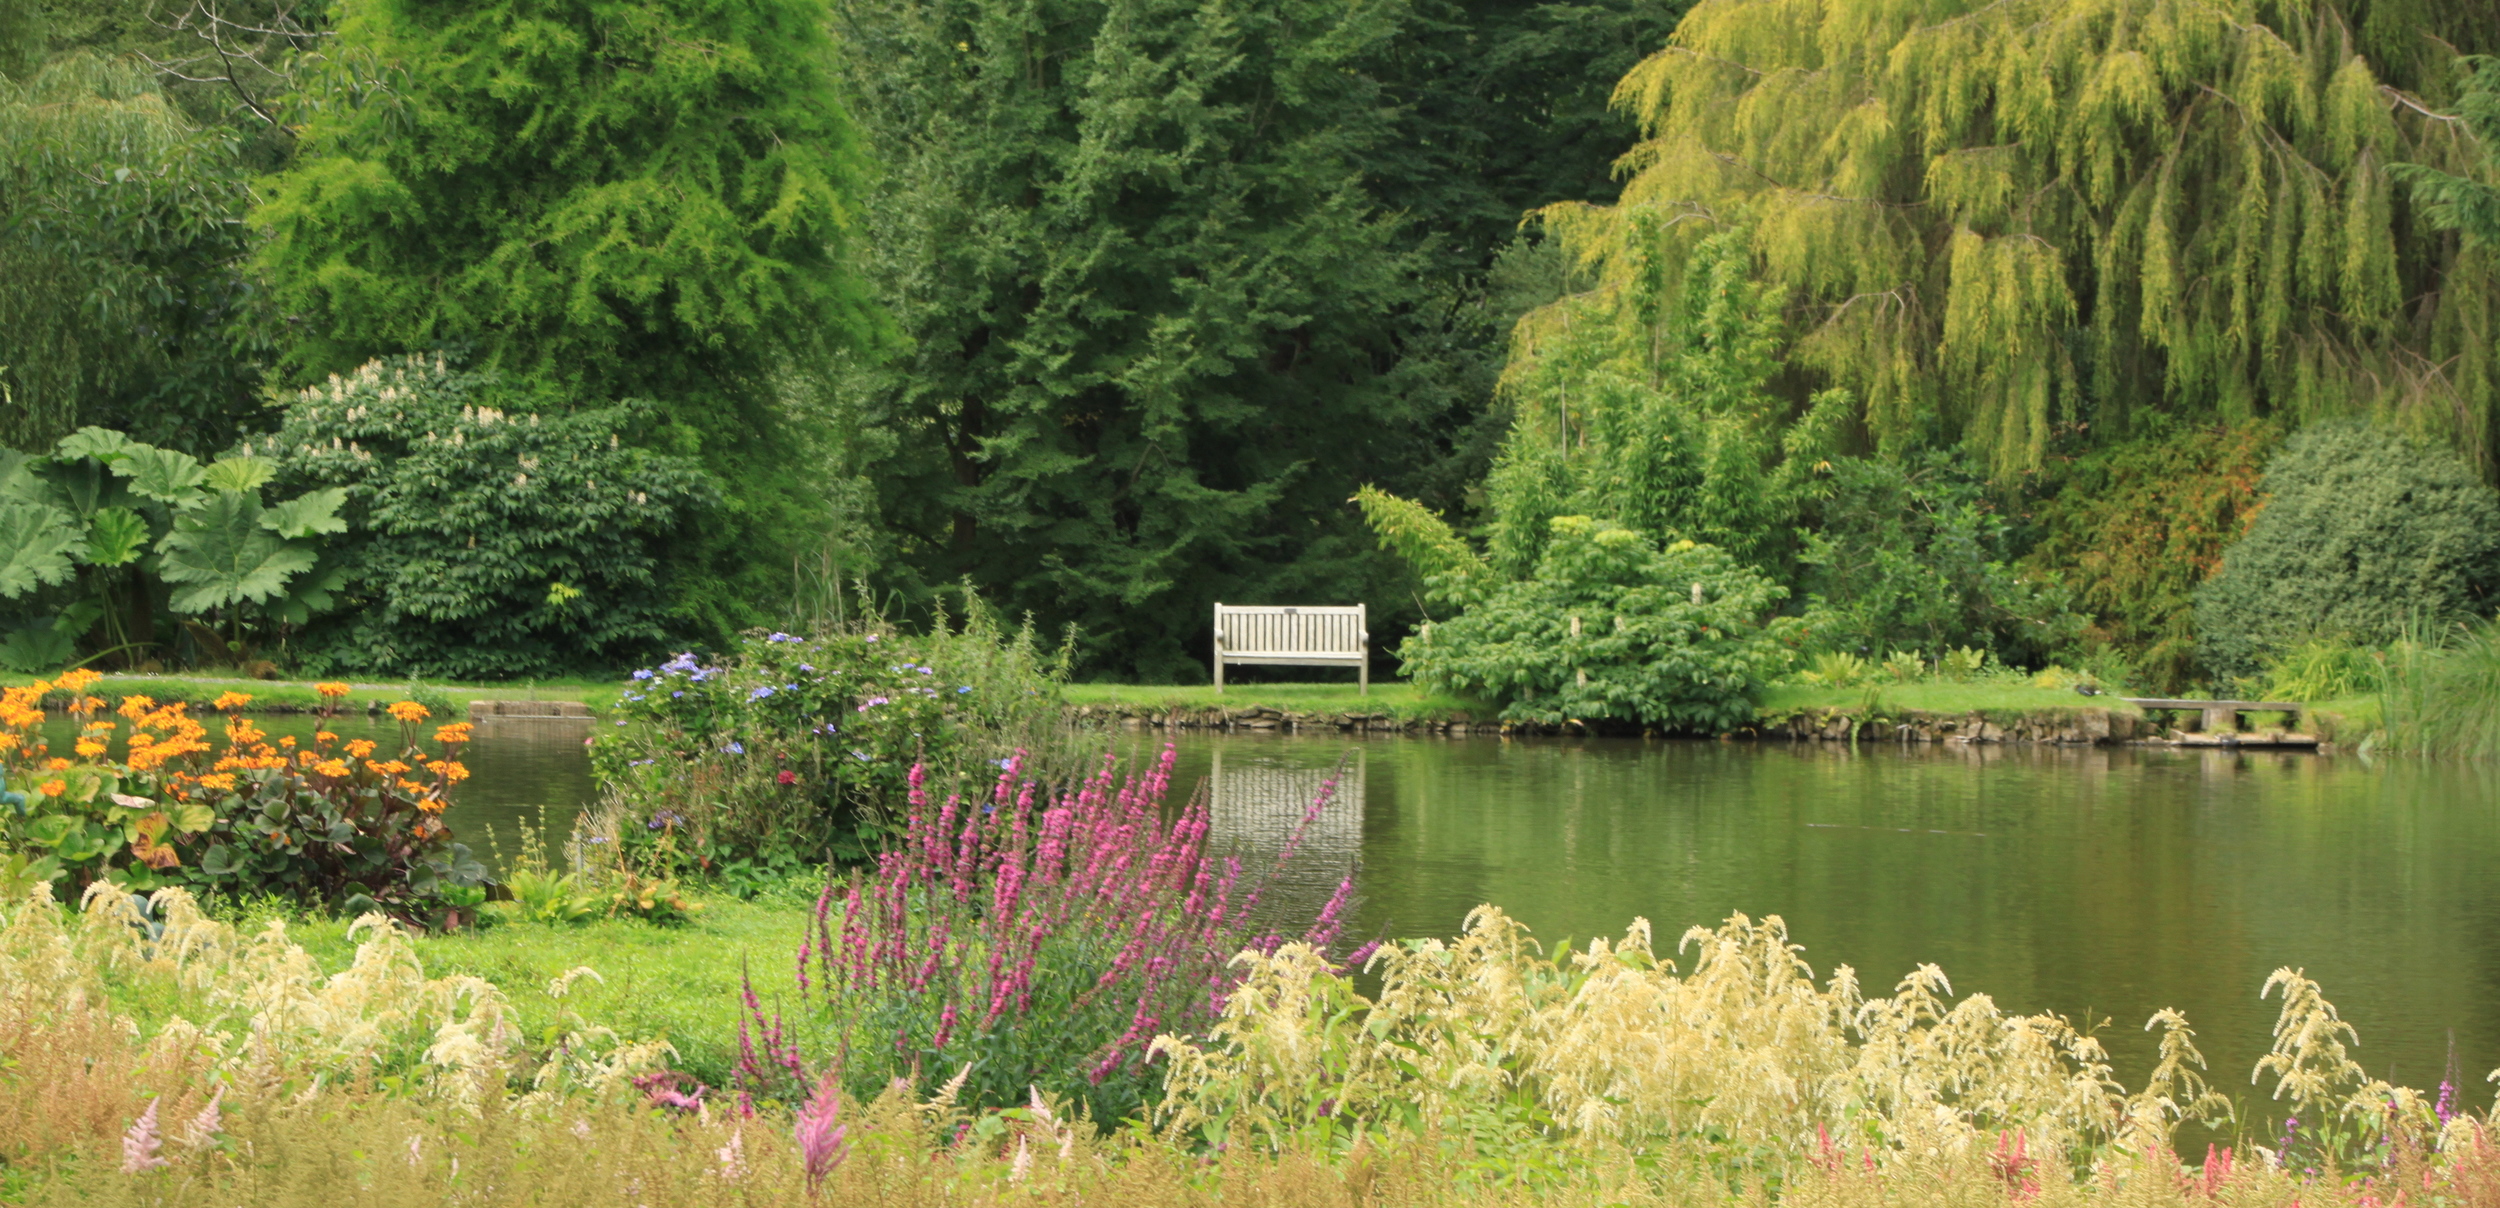 Marwood Hill Gardens, North Devon